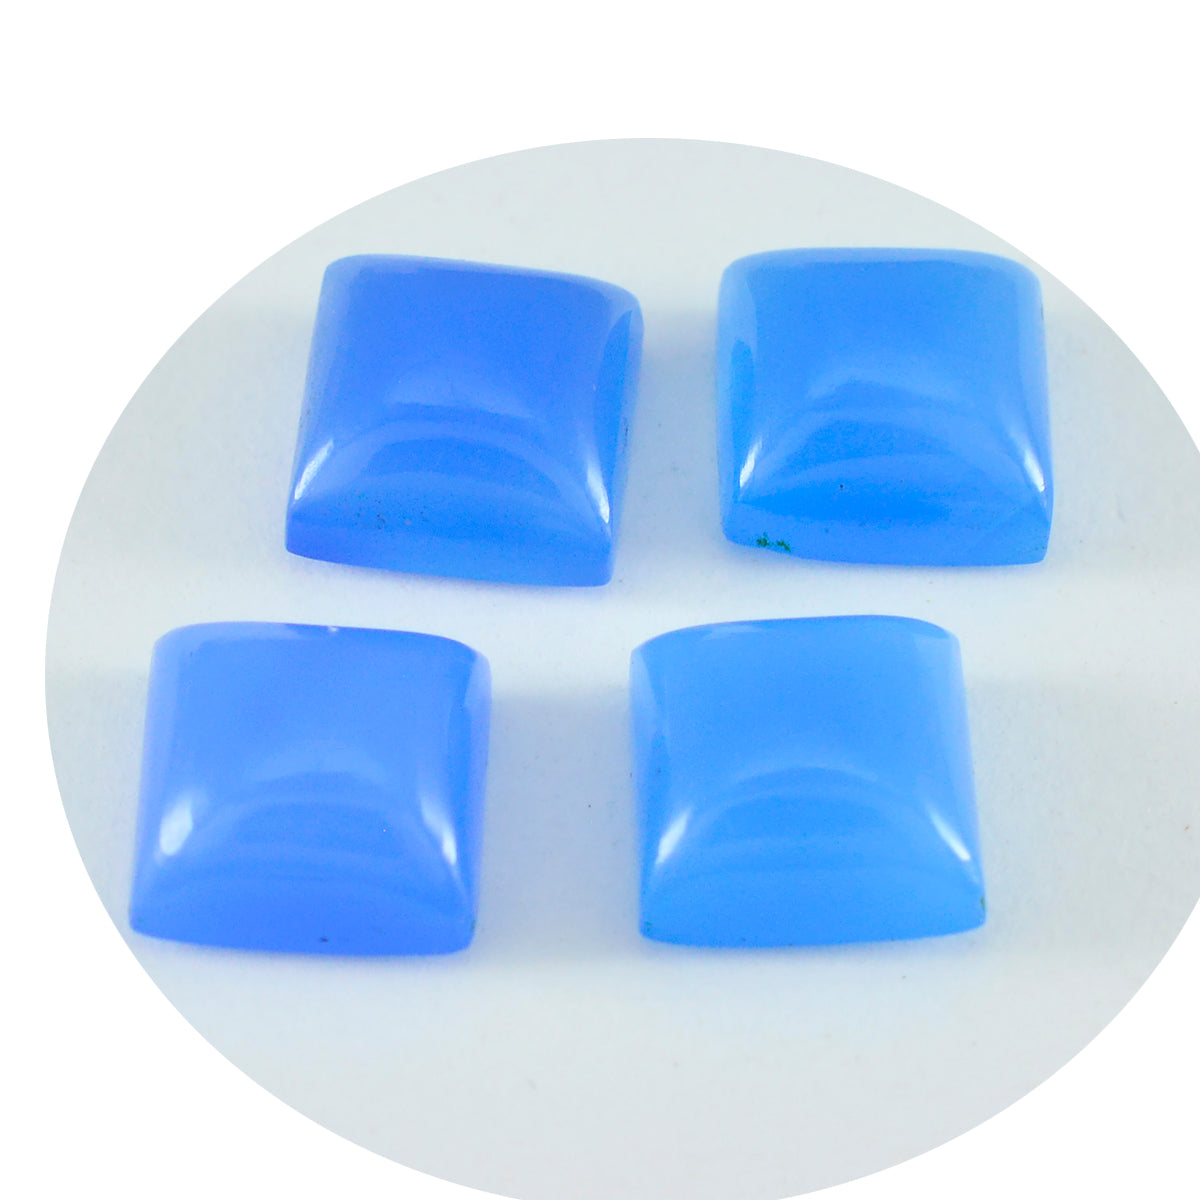 riyogems 1 шт. синий халцедон кабошон 11x11 мм квадратной формы красивые качественные свободные драгоценные камни